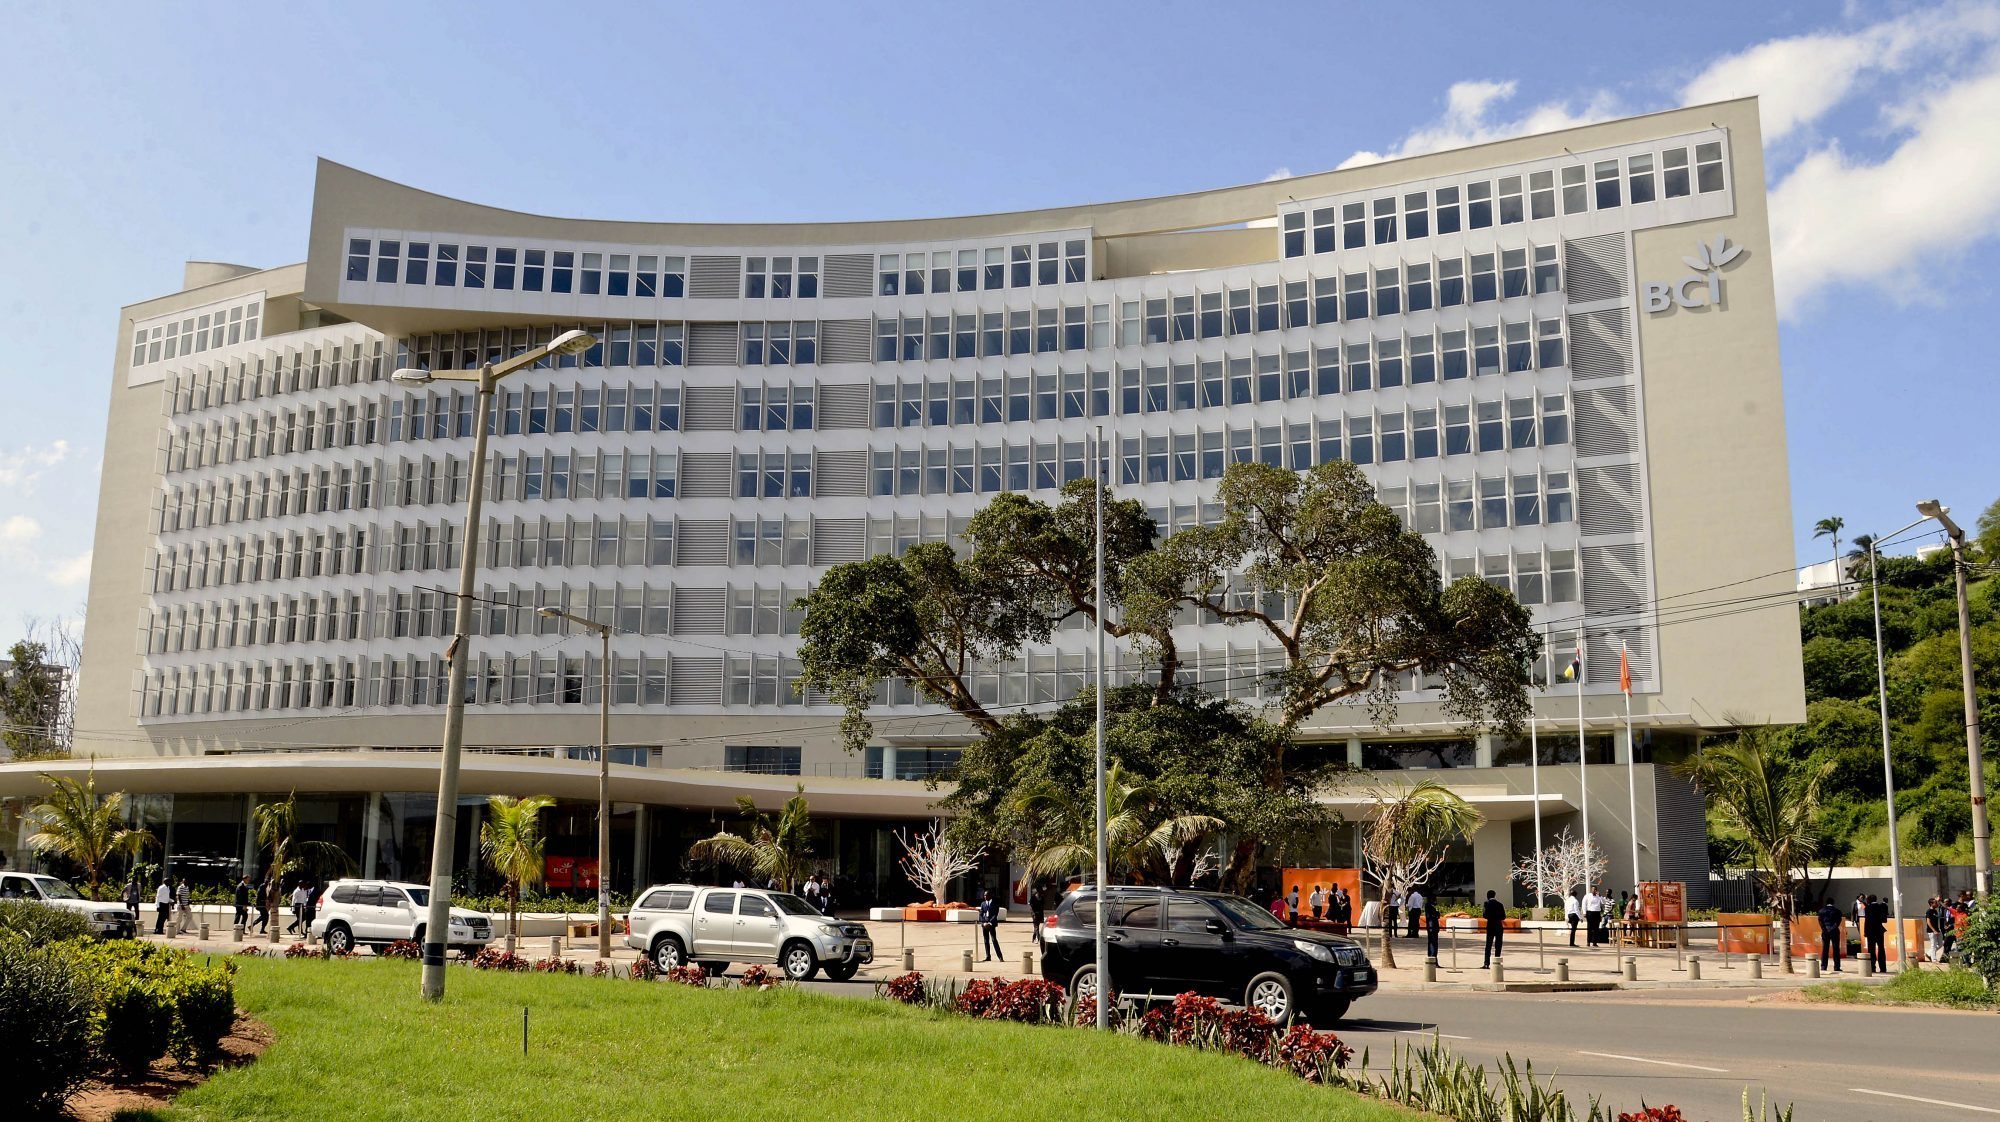 Sede do BCI (Banco Comercial e de Investimentos) em Maputo